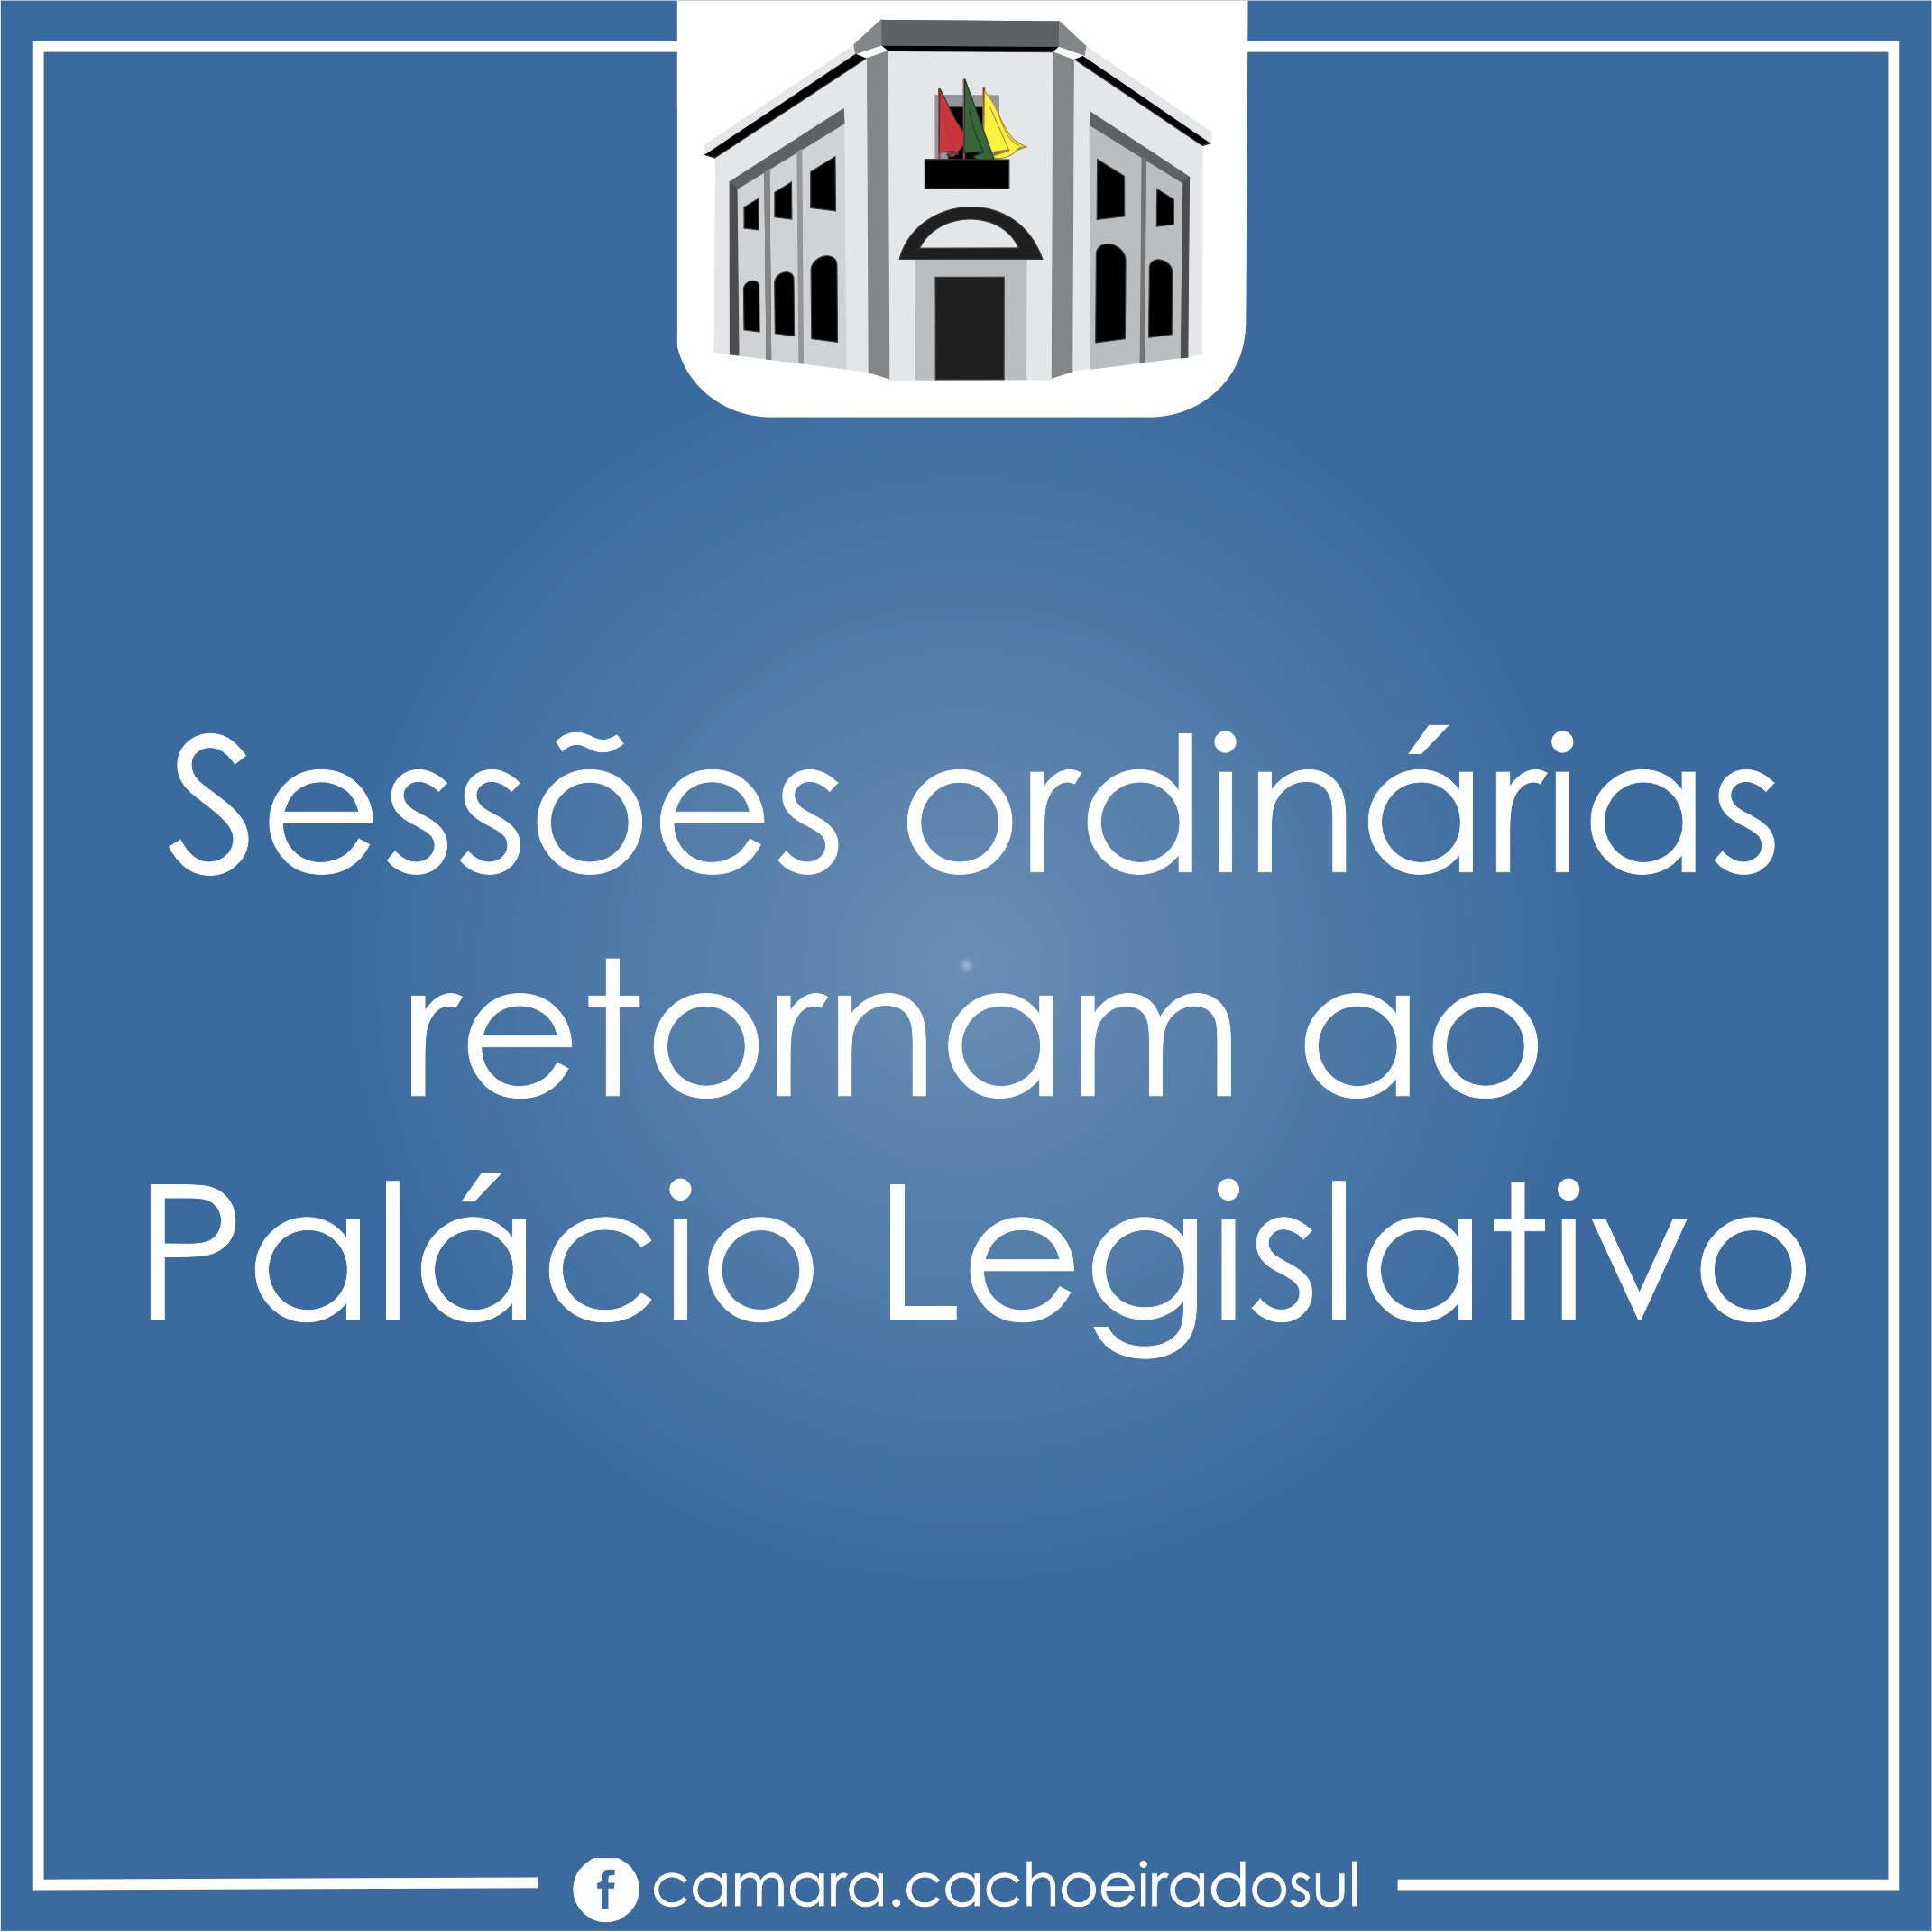 Sessões ordinárias retornam ao Palácio Legislativo